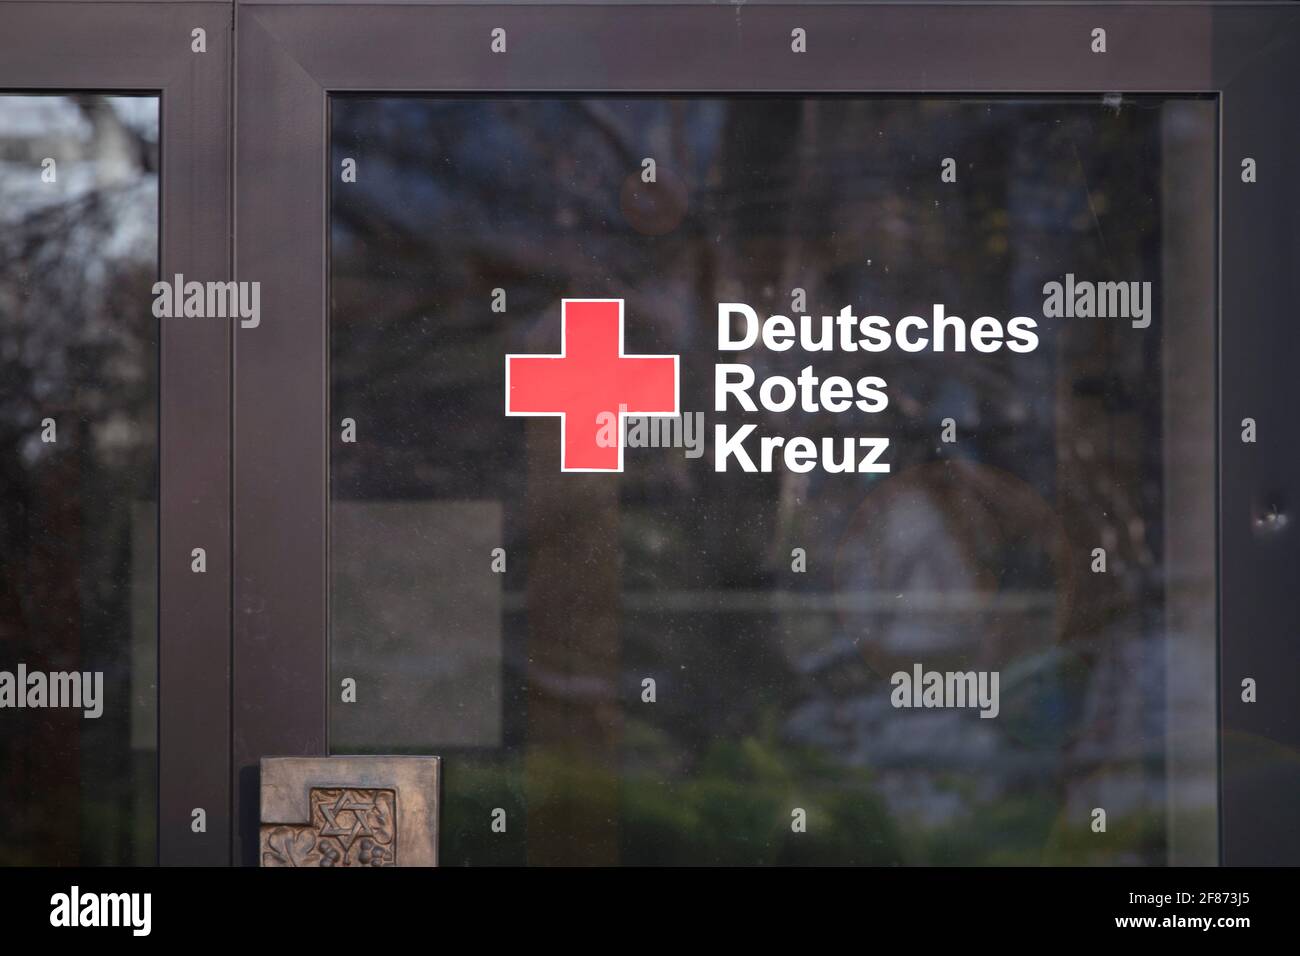 Grenzach-Wyhlen, Baden-Württemberg, Germania - 03.30.2021: Segno di 'Deutsches Rotes Kreuz' sulla porta. Logo della sezione tedesca croce rossa Foto Stock